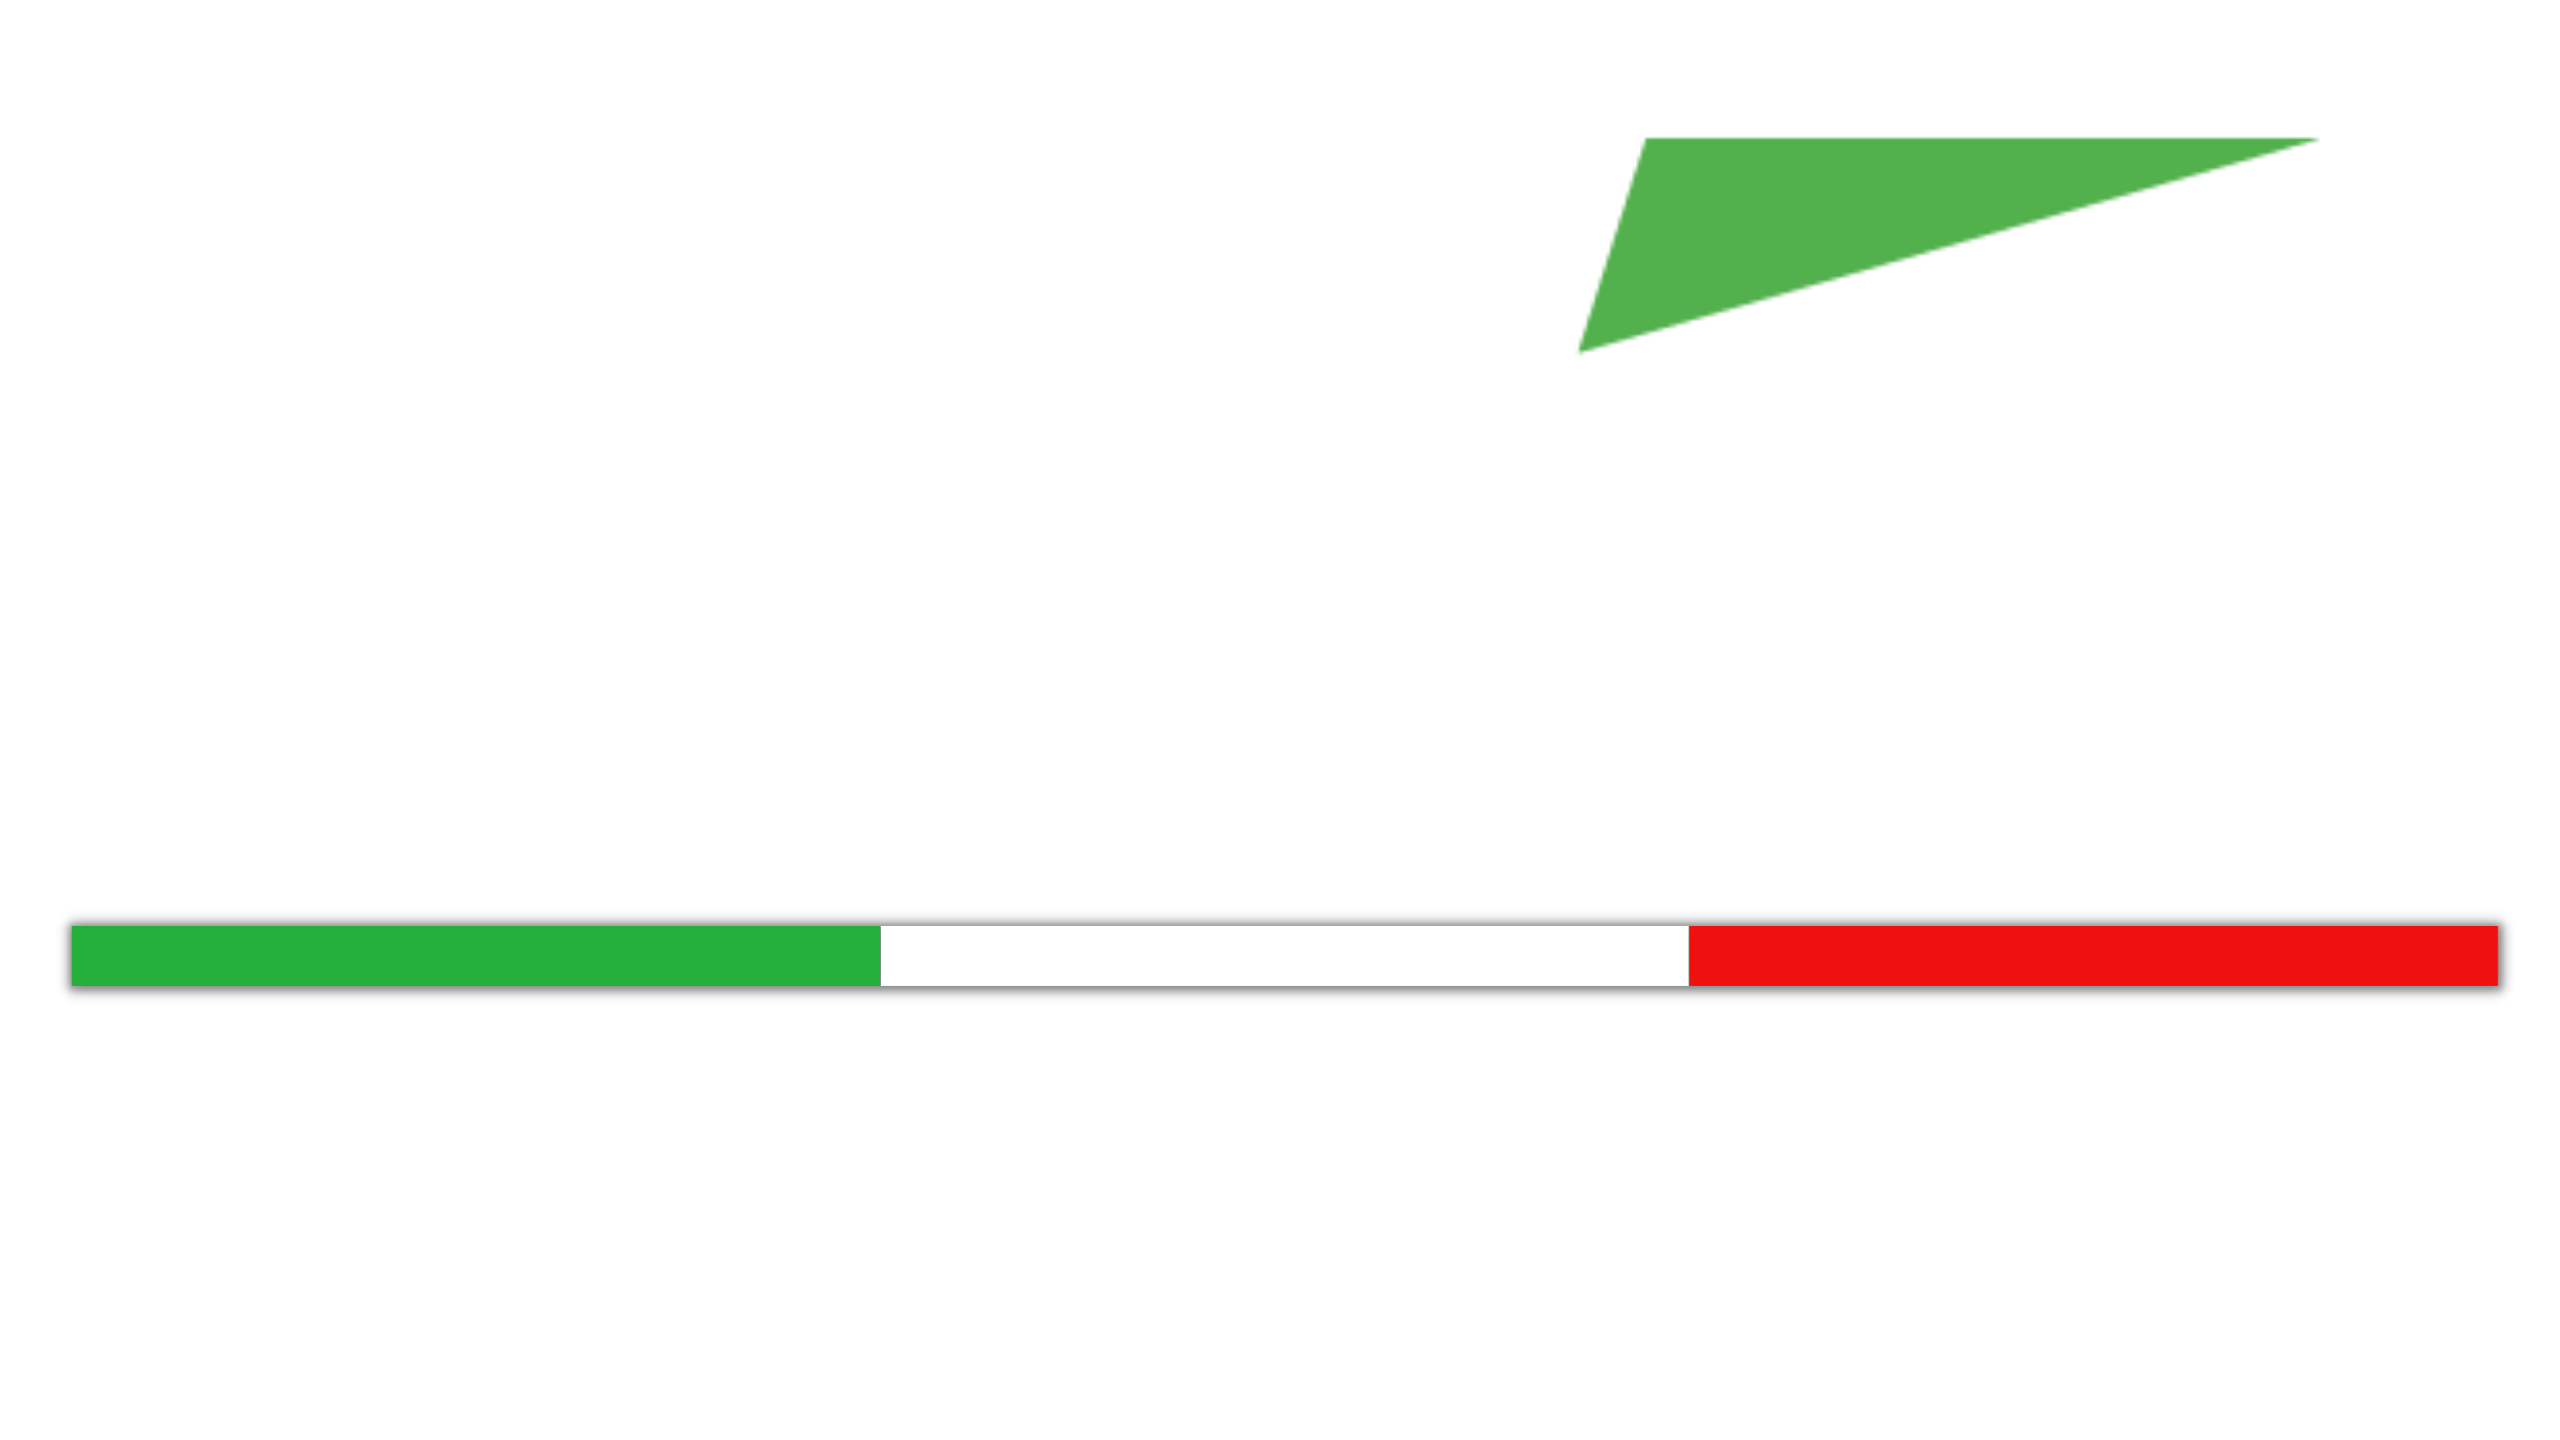 Projeto italiano 2023 logo